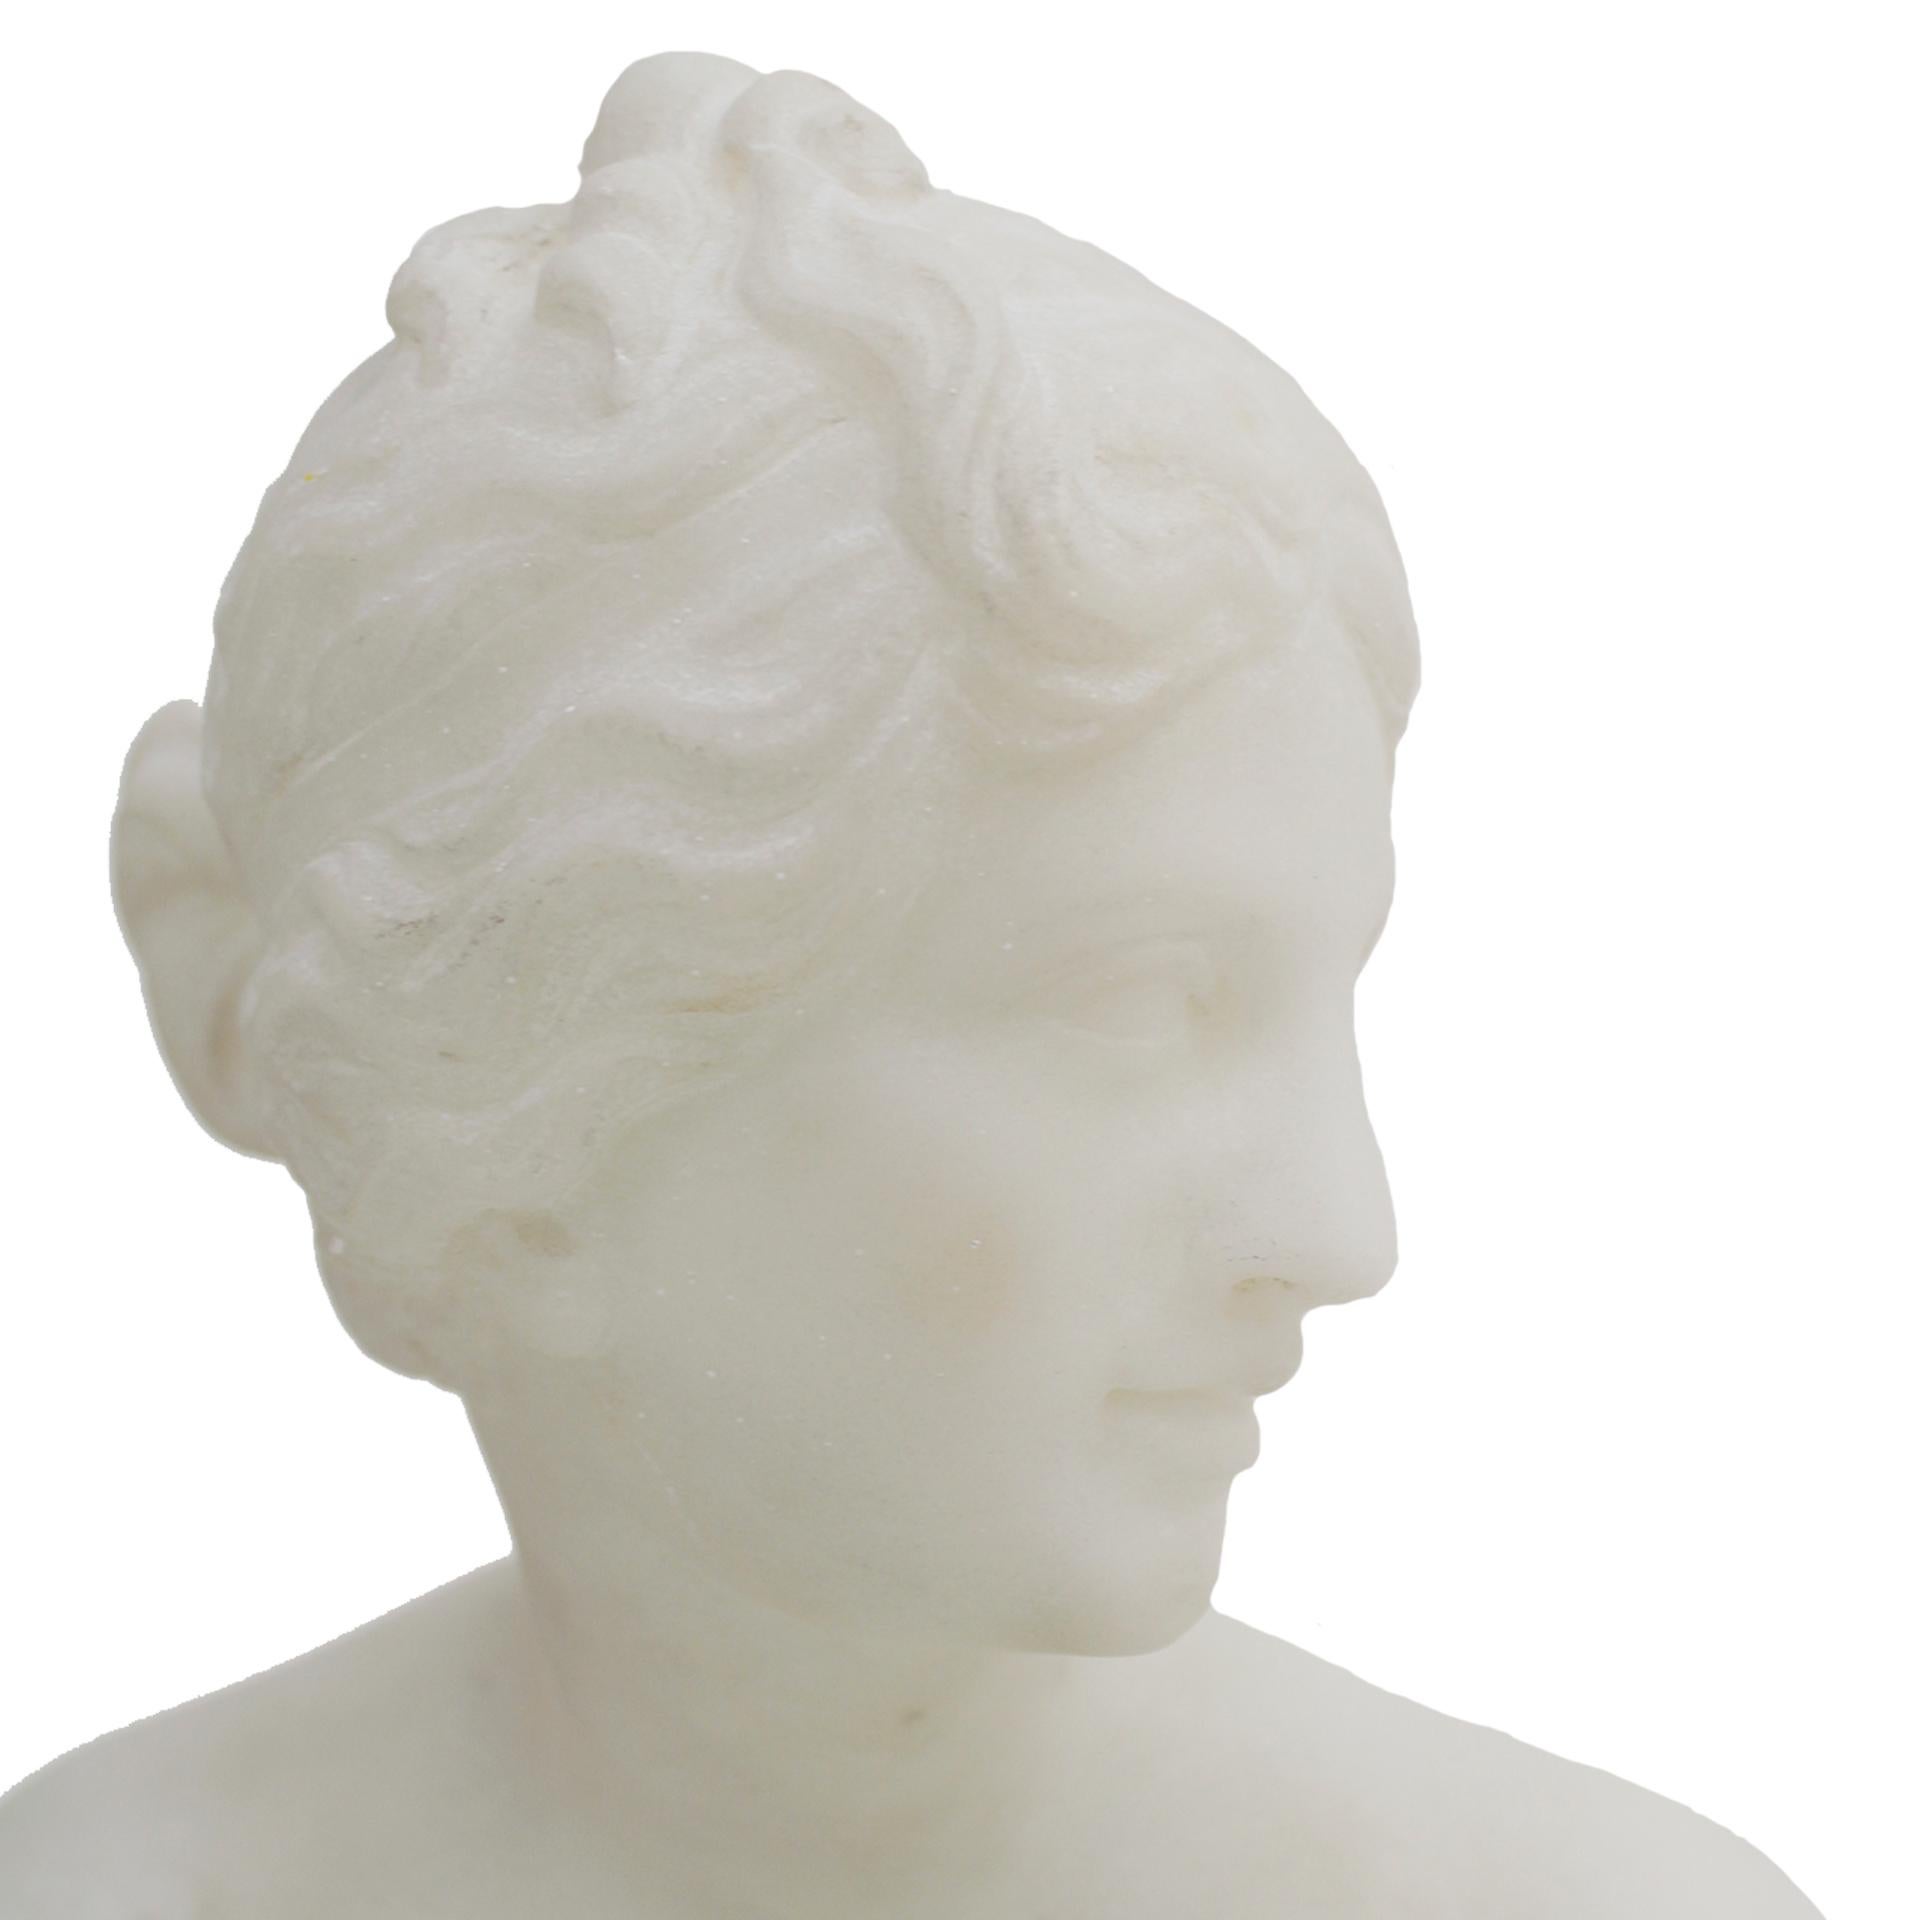 Un très élégant marbre blanc de Carrare italien du XIXe siècle. Cette statue étonnante représente l'élégante Vénus dans une pose momentanée, comme si elle était surprise en train d'émerger de la mer, représentée par les charmants chérubins et